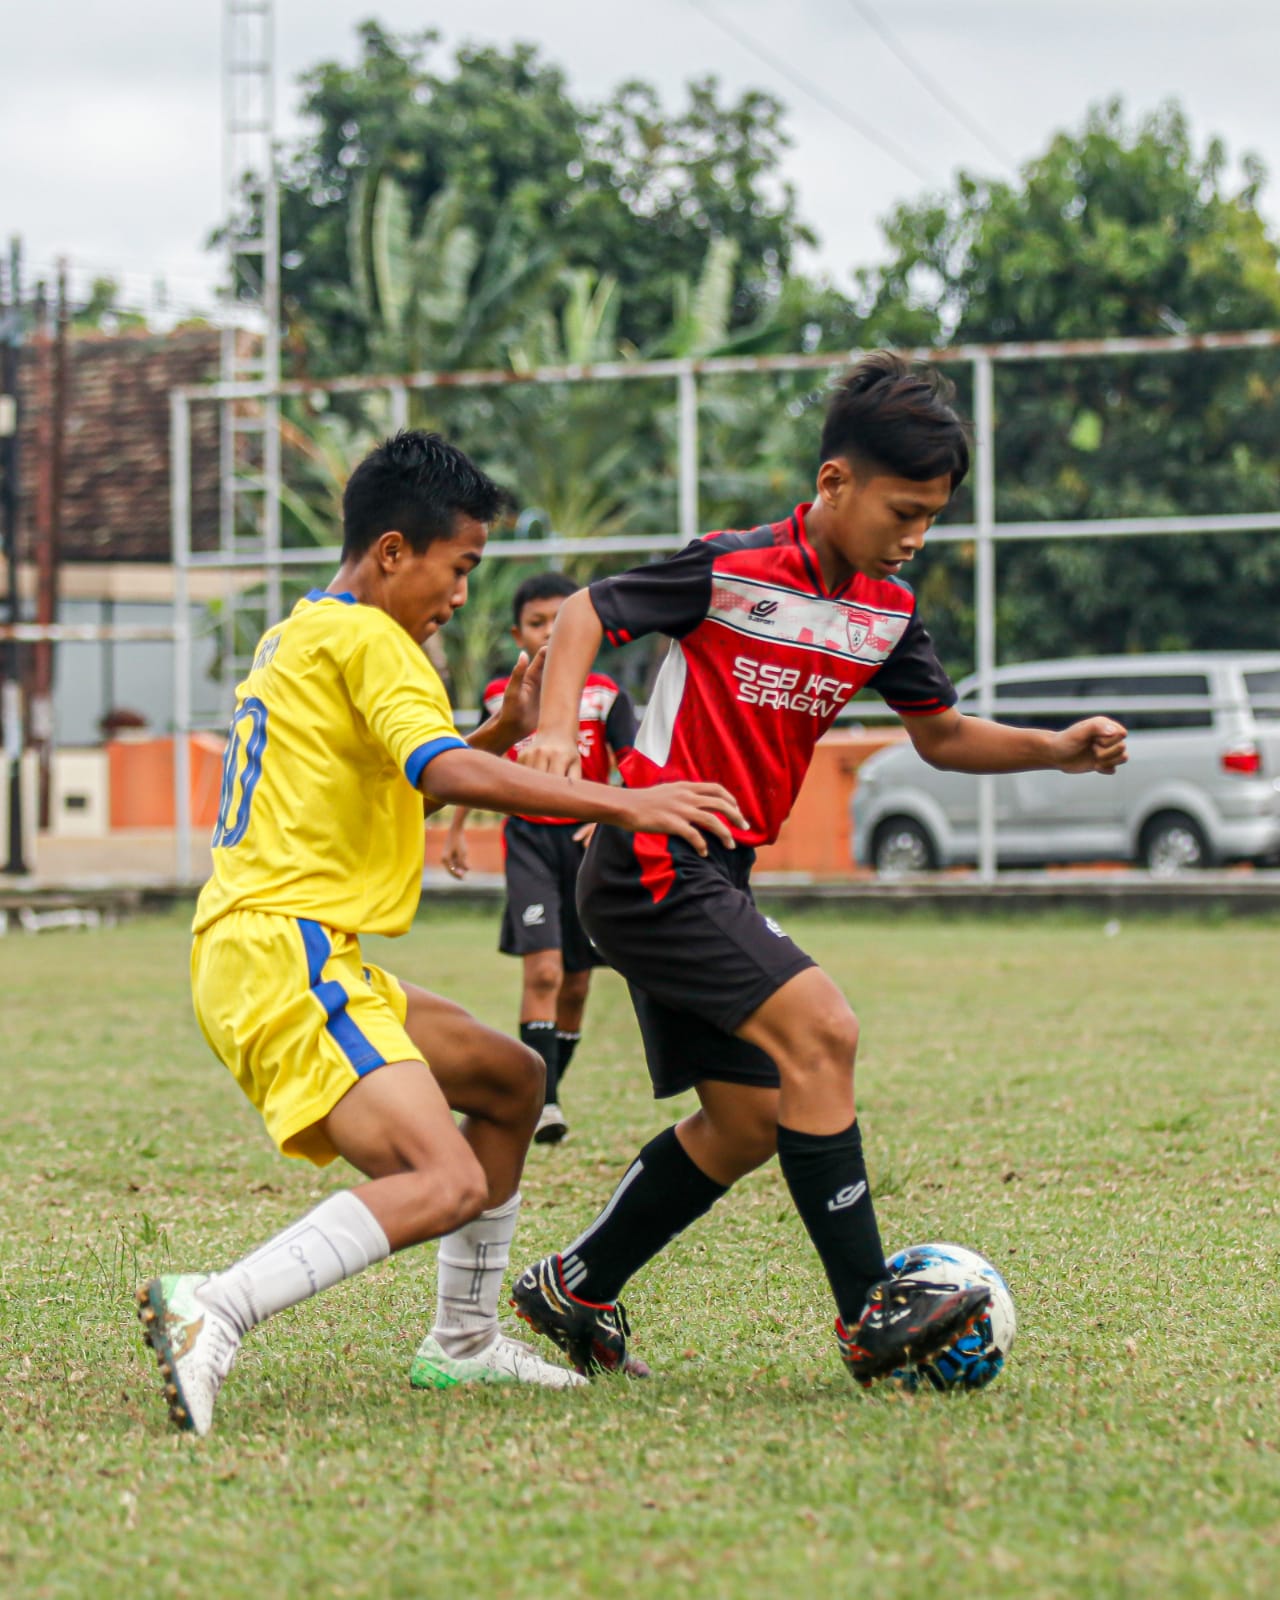 Liga TopSkor U-13 Surakarta: Young Boys Tak Tergoyahkan di Puncak Klasemen